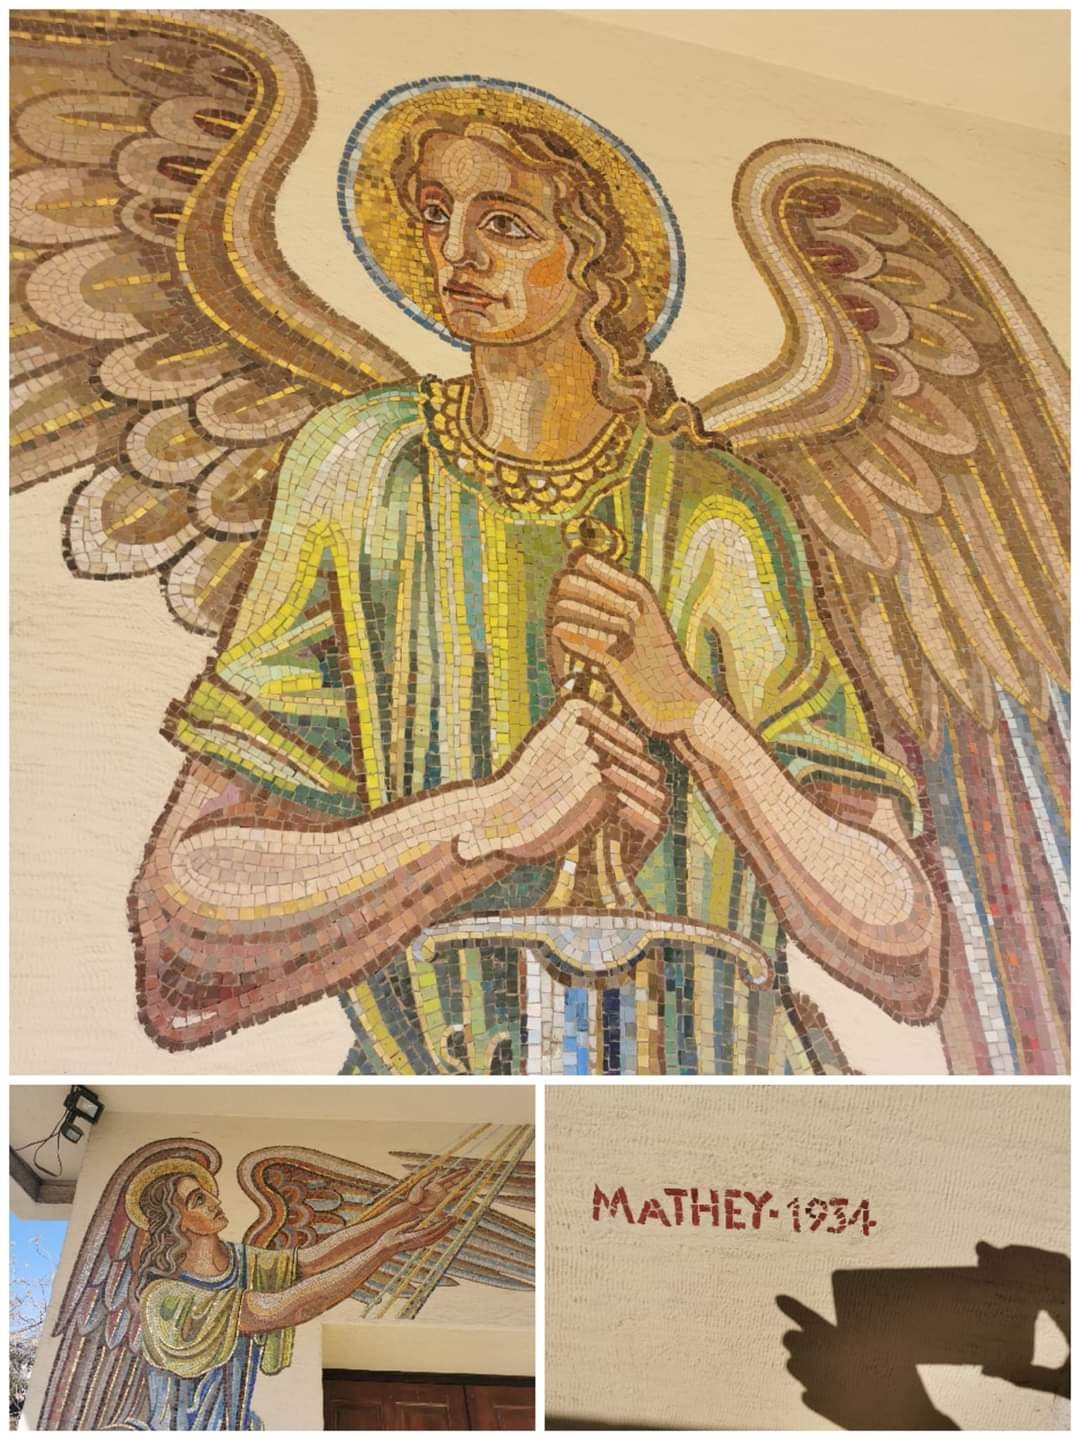 Das dreigeteilte Bild zeigt oben das Mosaik des Engels rechts der Kirchentür, der sich auf einen Schwertknauf stützt, darunter unten links den Engel links der Tür, der mit den Händen nach oben in Lichtstrahlen greift, und unten rechts die Künstlerinschrift von Georg Alexander Mathéy.